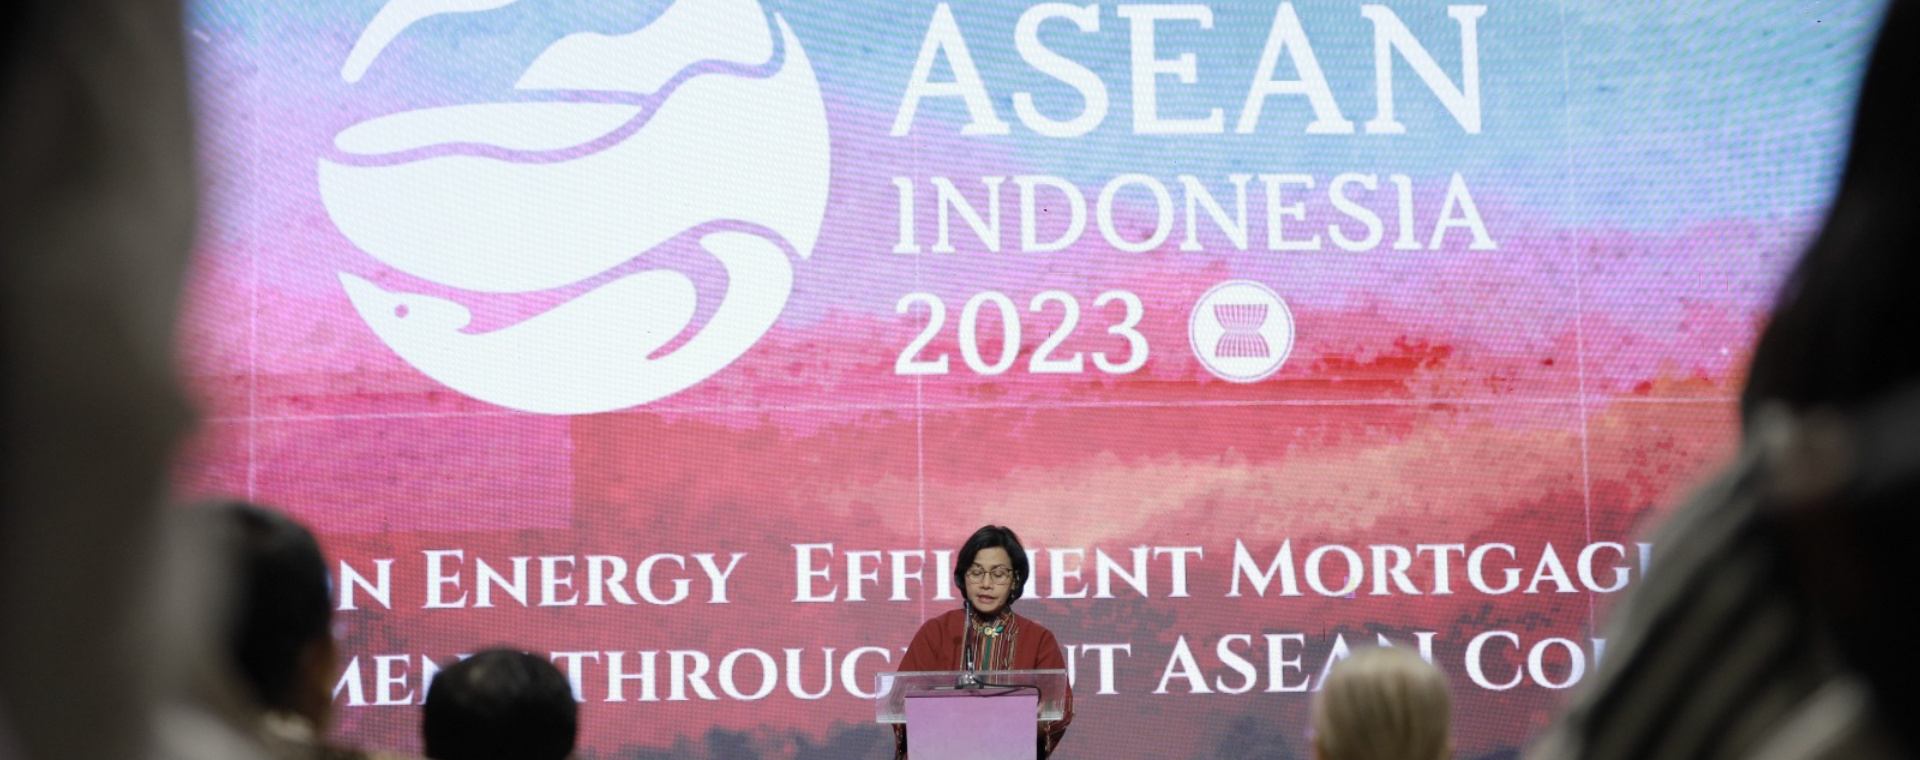 Menteri Keuangan Sri Mulyani Indrawati dalam acara ASEAN Chairmanship, Developing Energy Efficient Mortgage in ASEAN Region yang berlangsung di Jakarta, Selasa (22/8/2023)./Dok. Kemenkeu